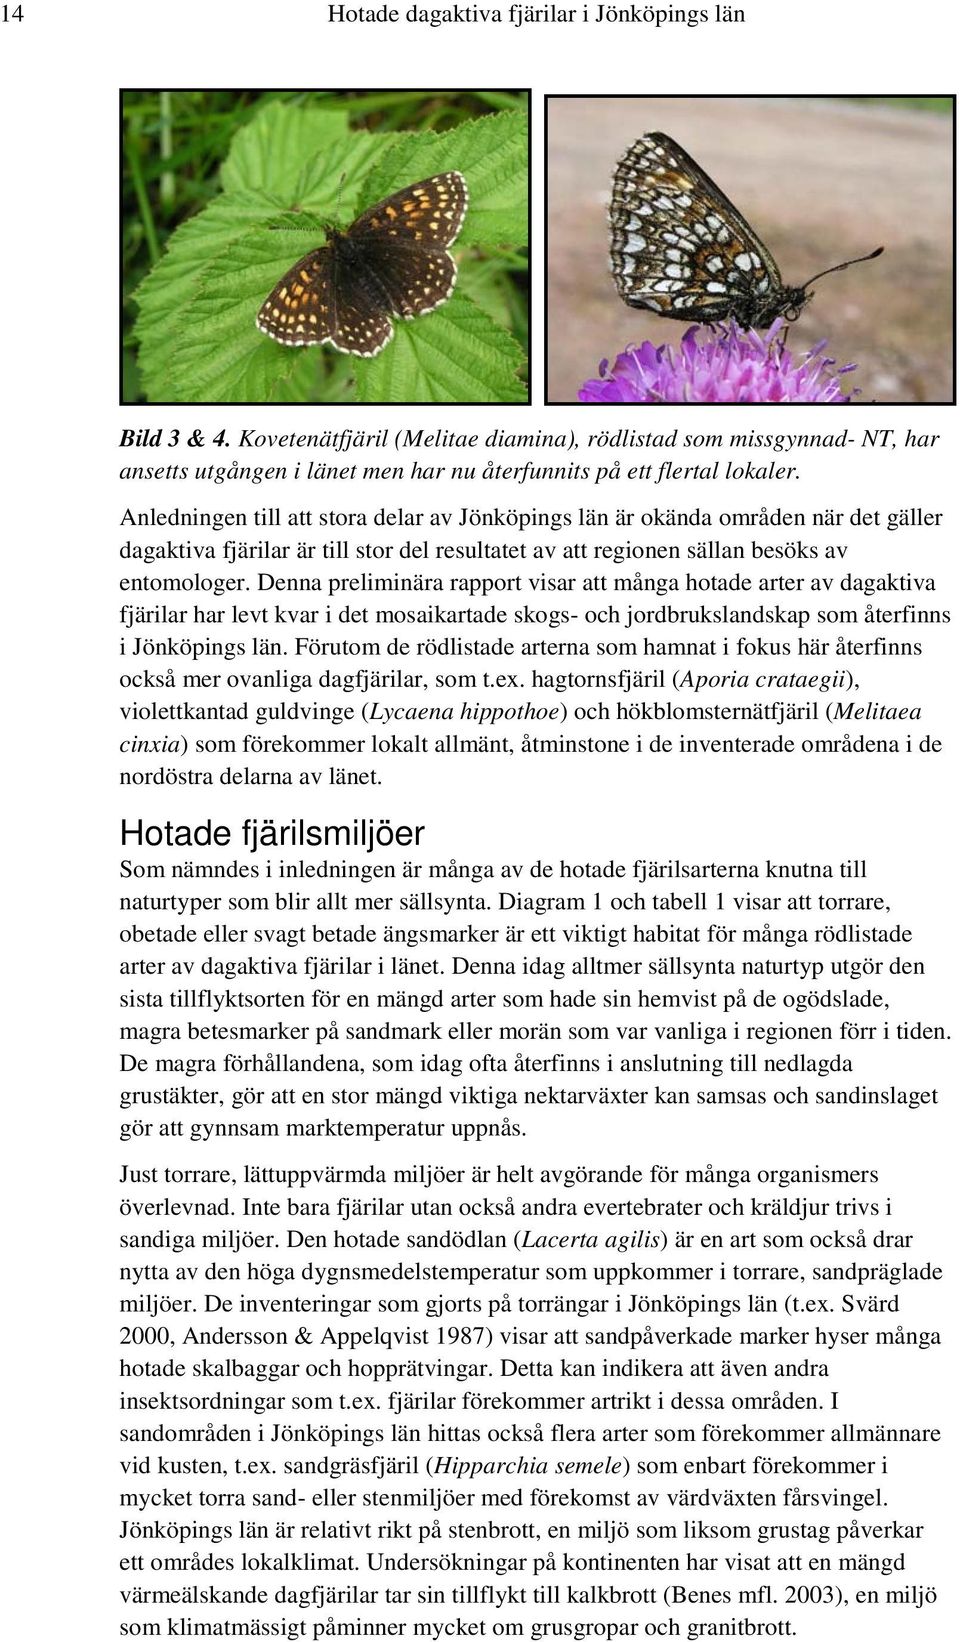 Denna preliminära rapport visar att många hotade arter av dagaktiva fjärilar har levt kvar i det mosaikartade skogs- och jordbrukslandskap som återfinns i Jönköpings län.